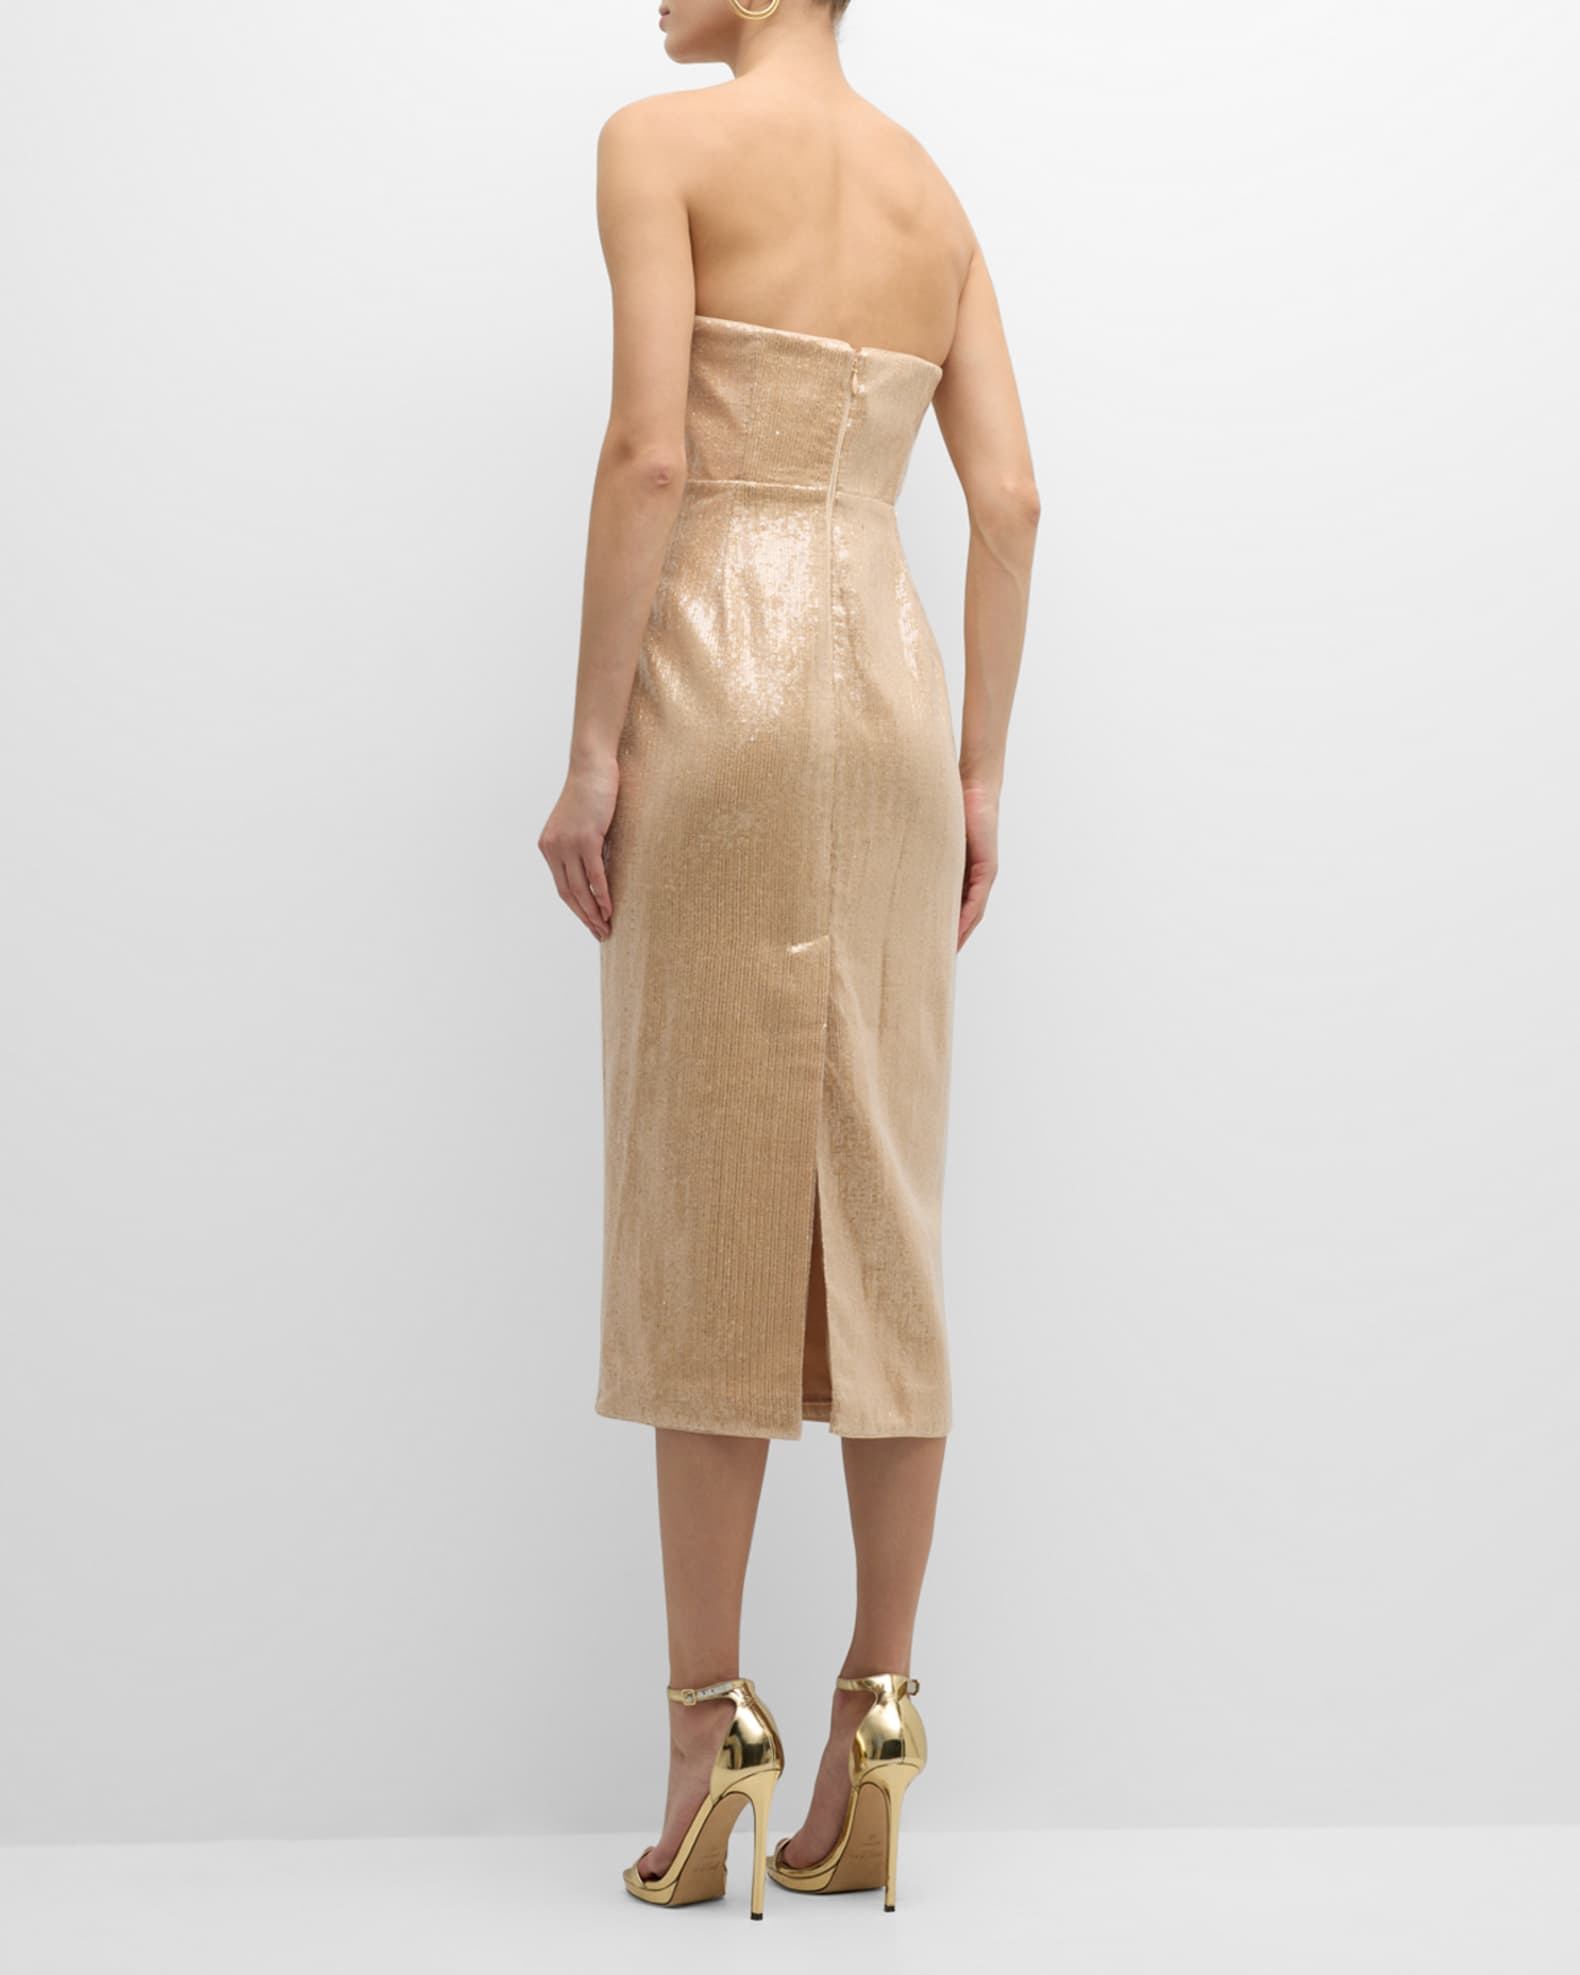 Milly Kait Strapless Sequin Bodycon Midi Dress | Neiman Marcus